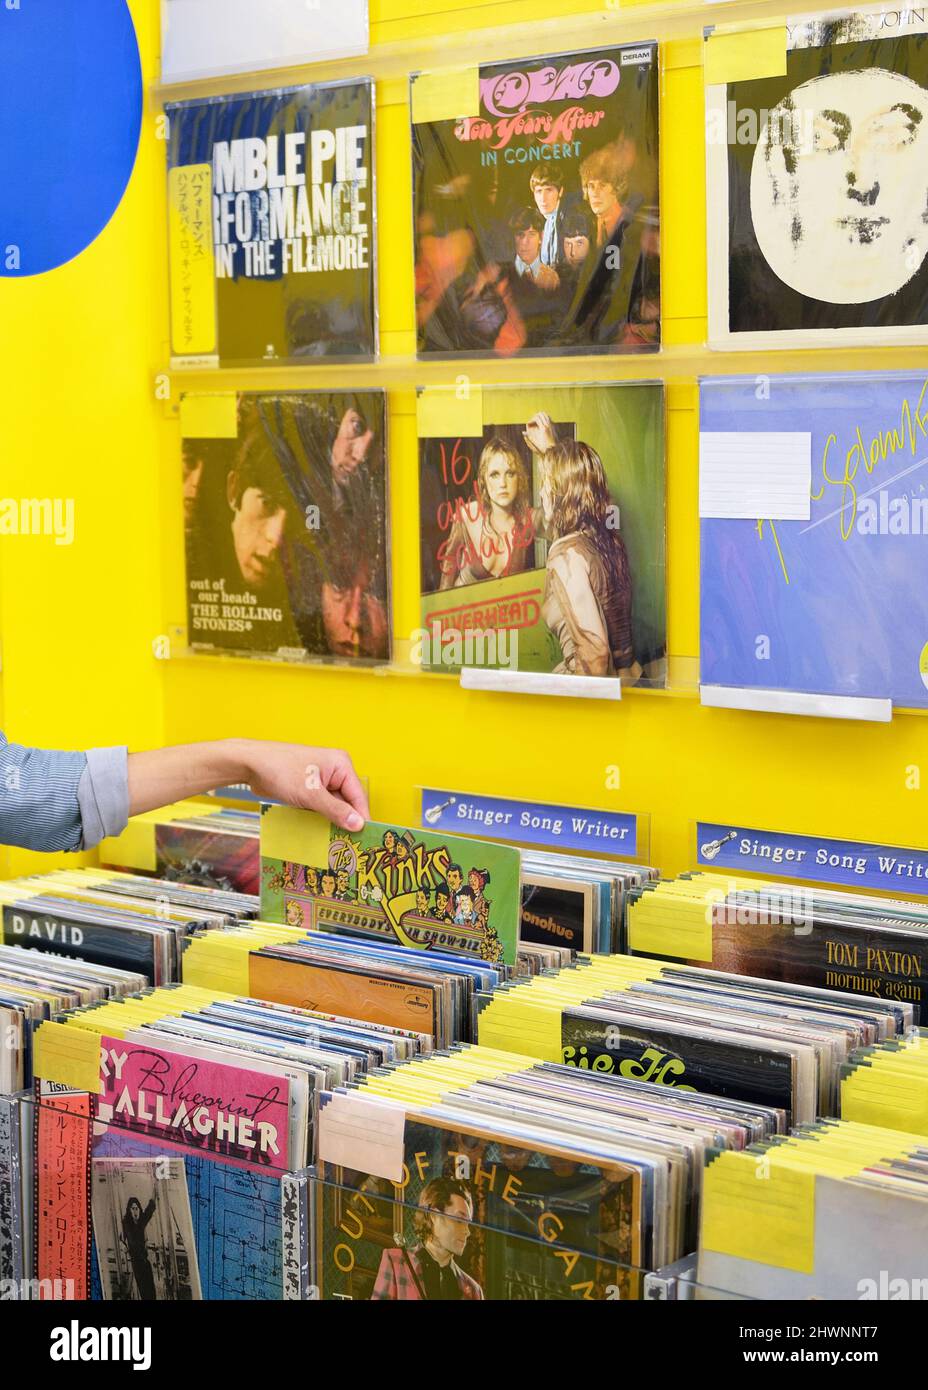 All'interno di un negozio di dischi, sono esposti album in vinile. Foto Stock